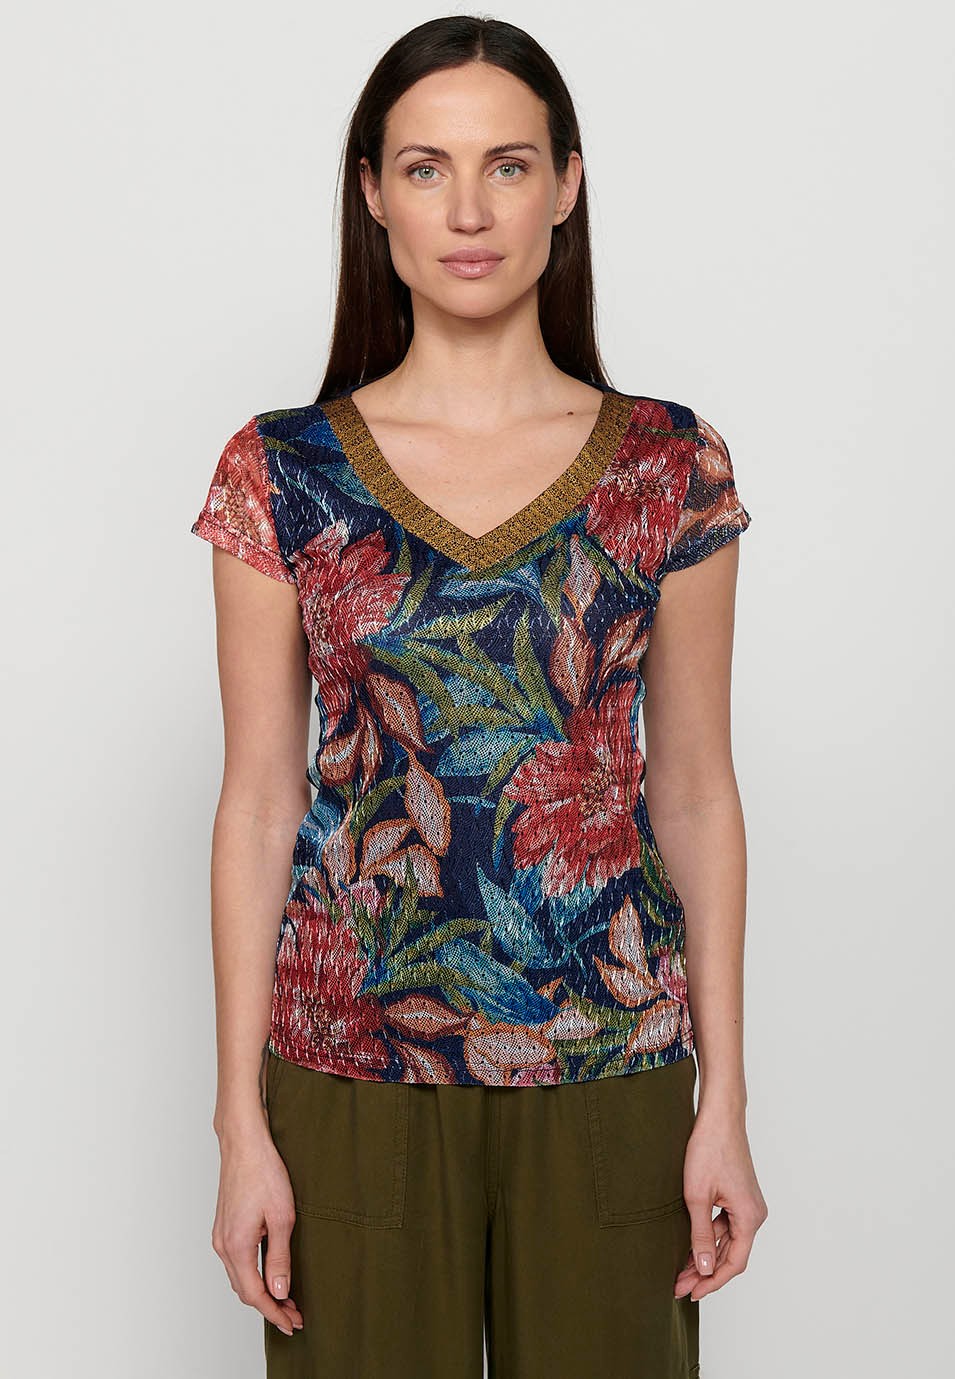 Samarreta de màniga curta, coll bec i estampat floral multicolor per a dona